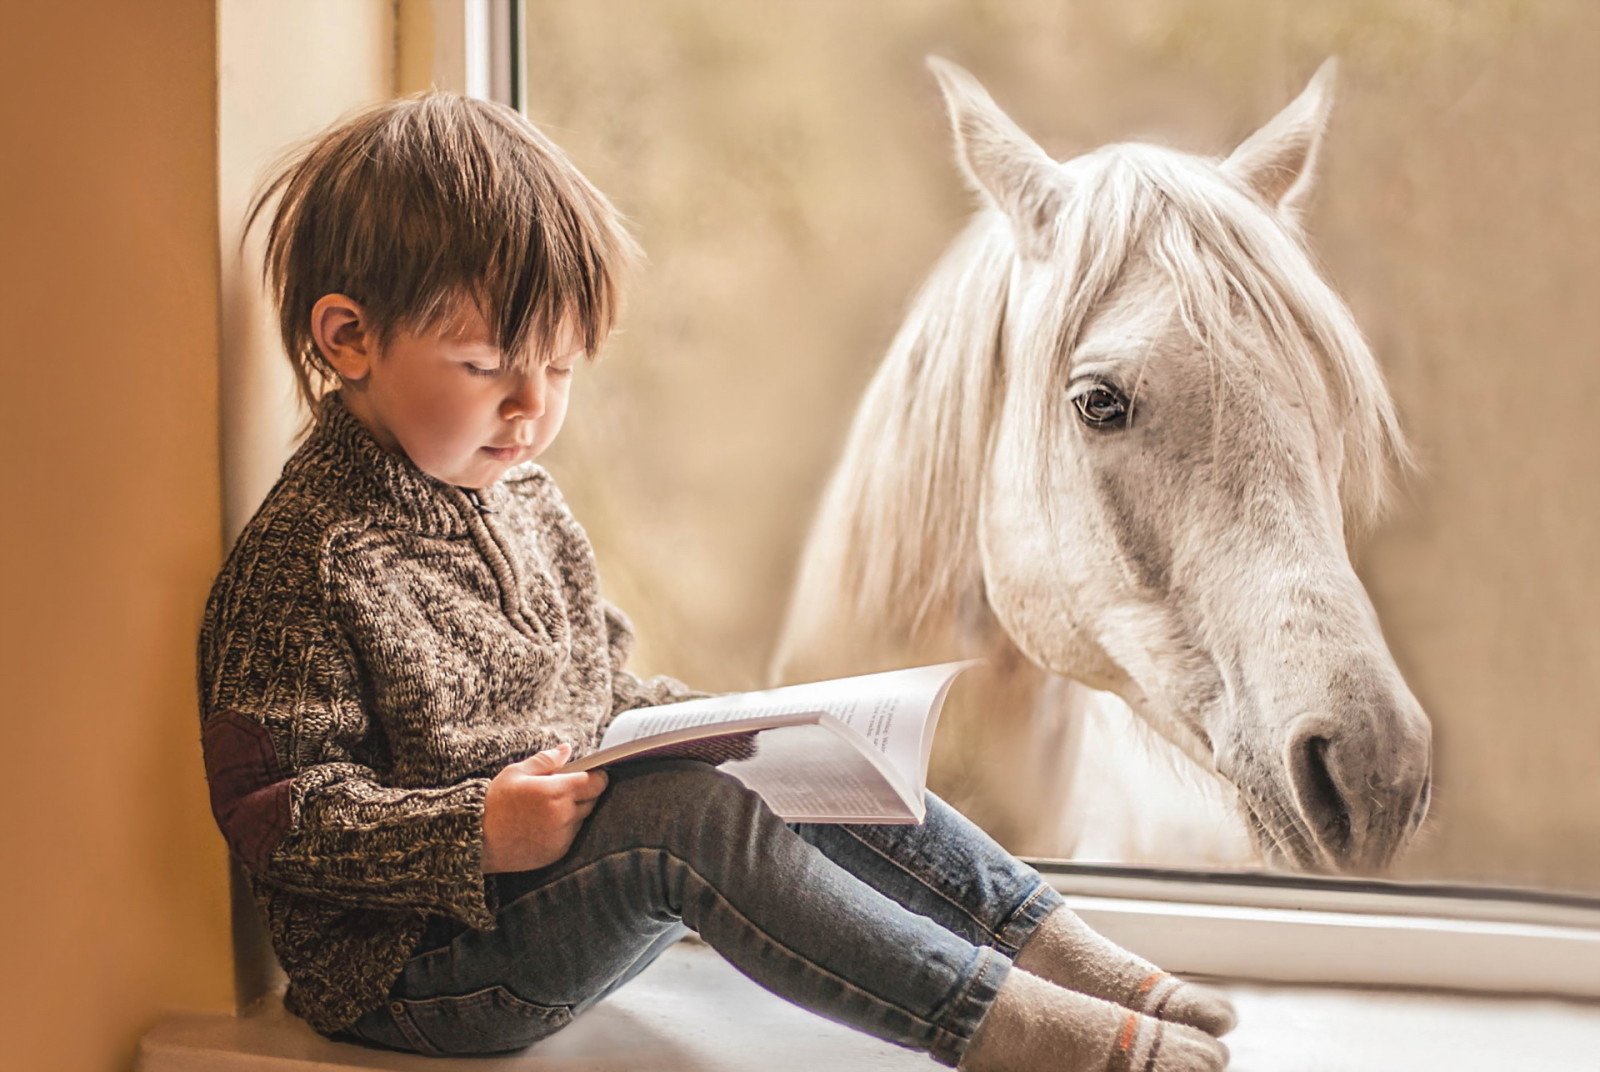 马, 书, 窗口, 男孩